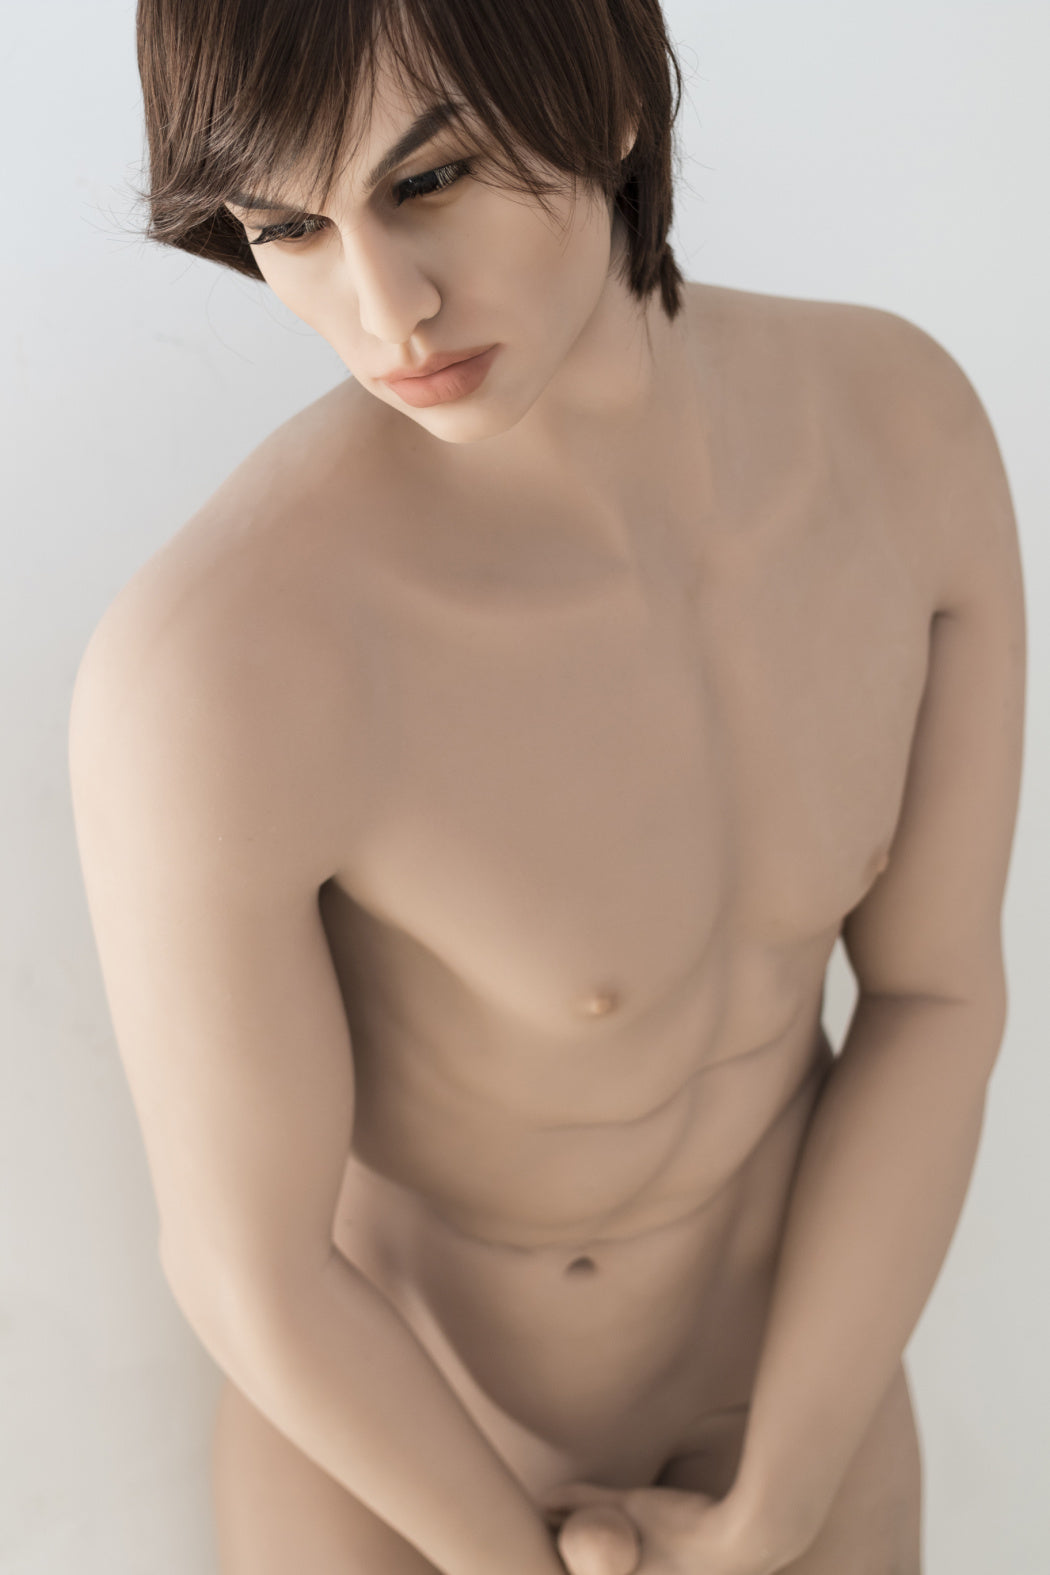 WM Doll 175CM Male Sex Doll + 183#